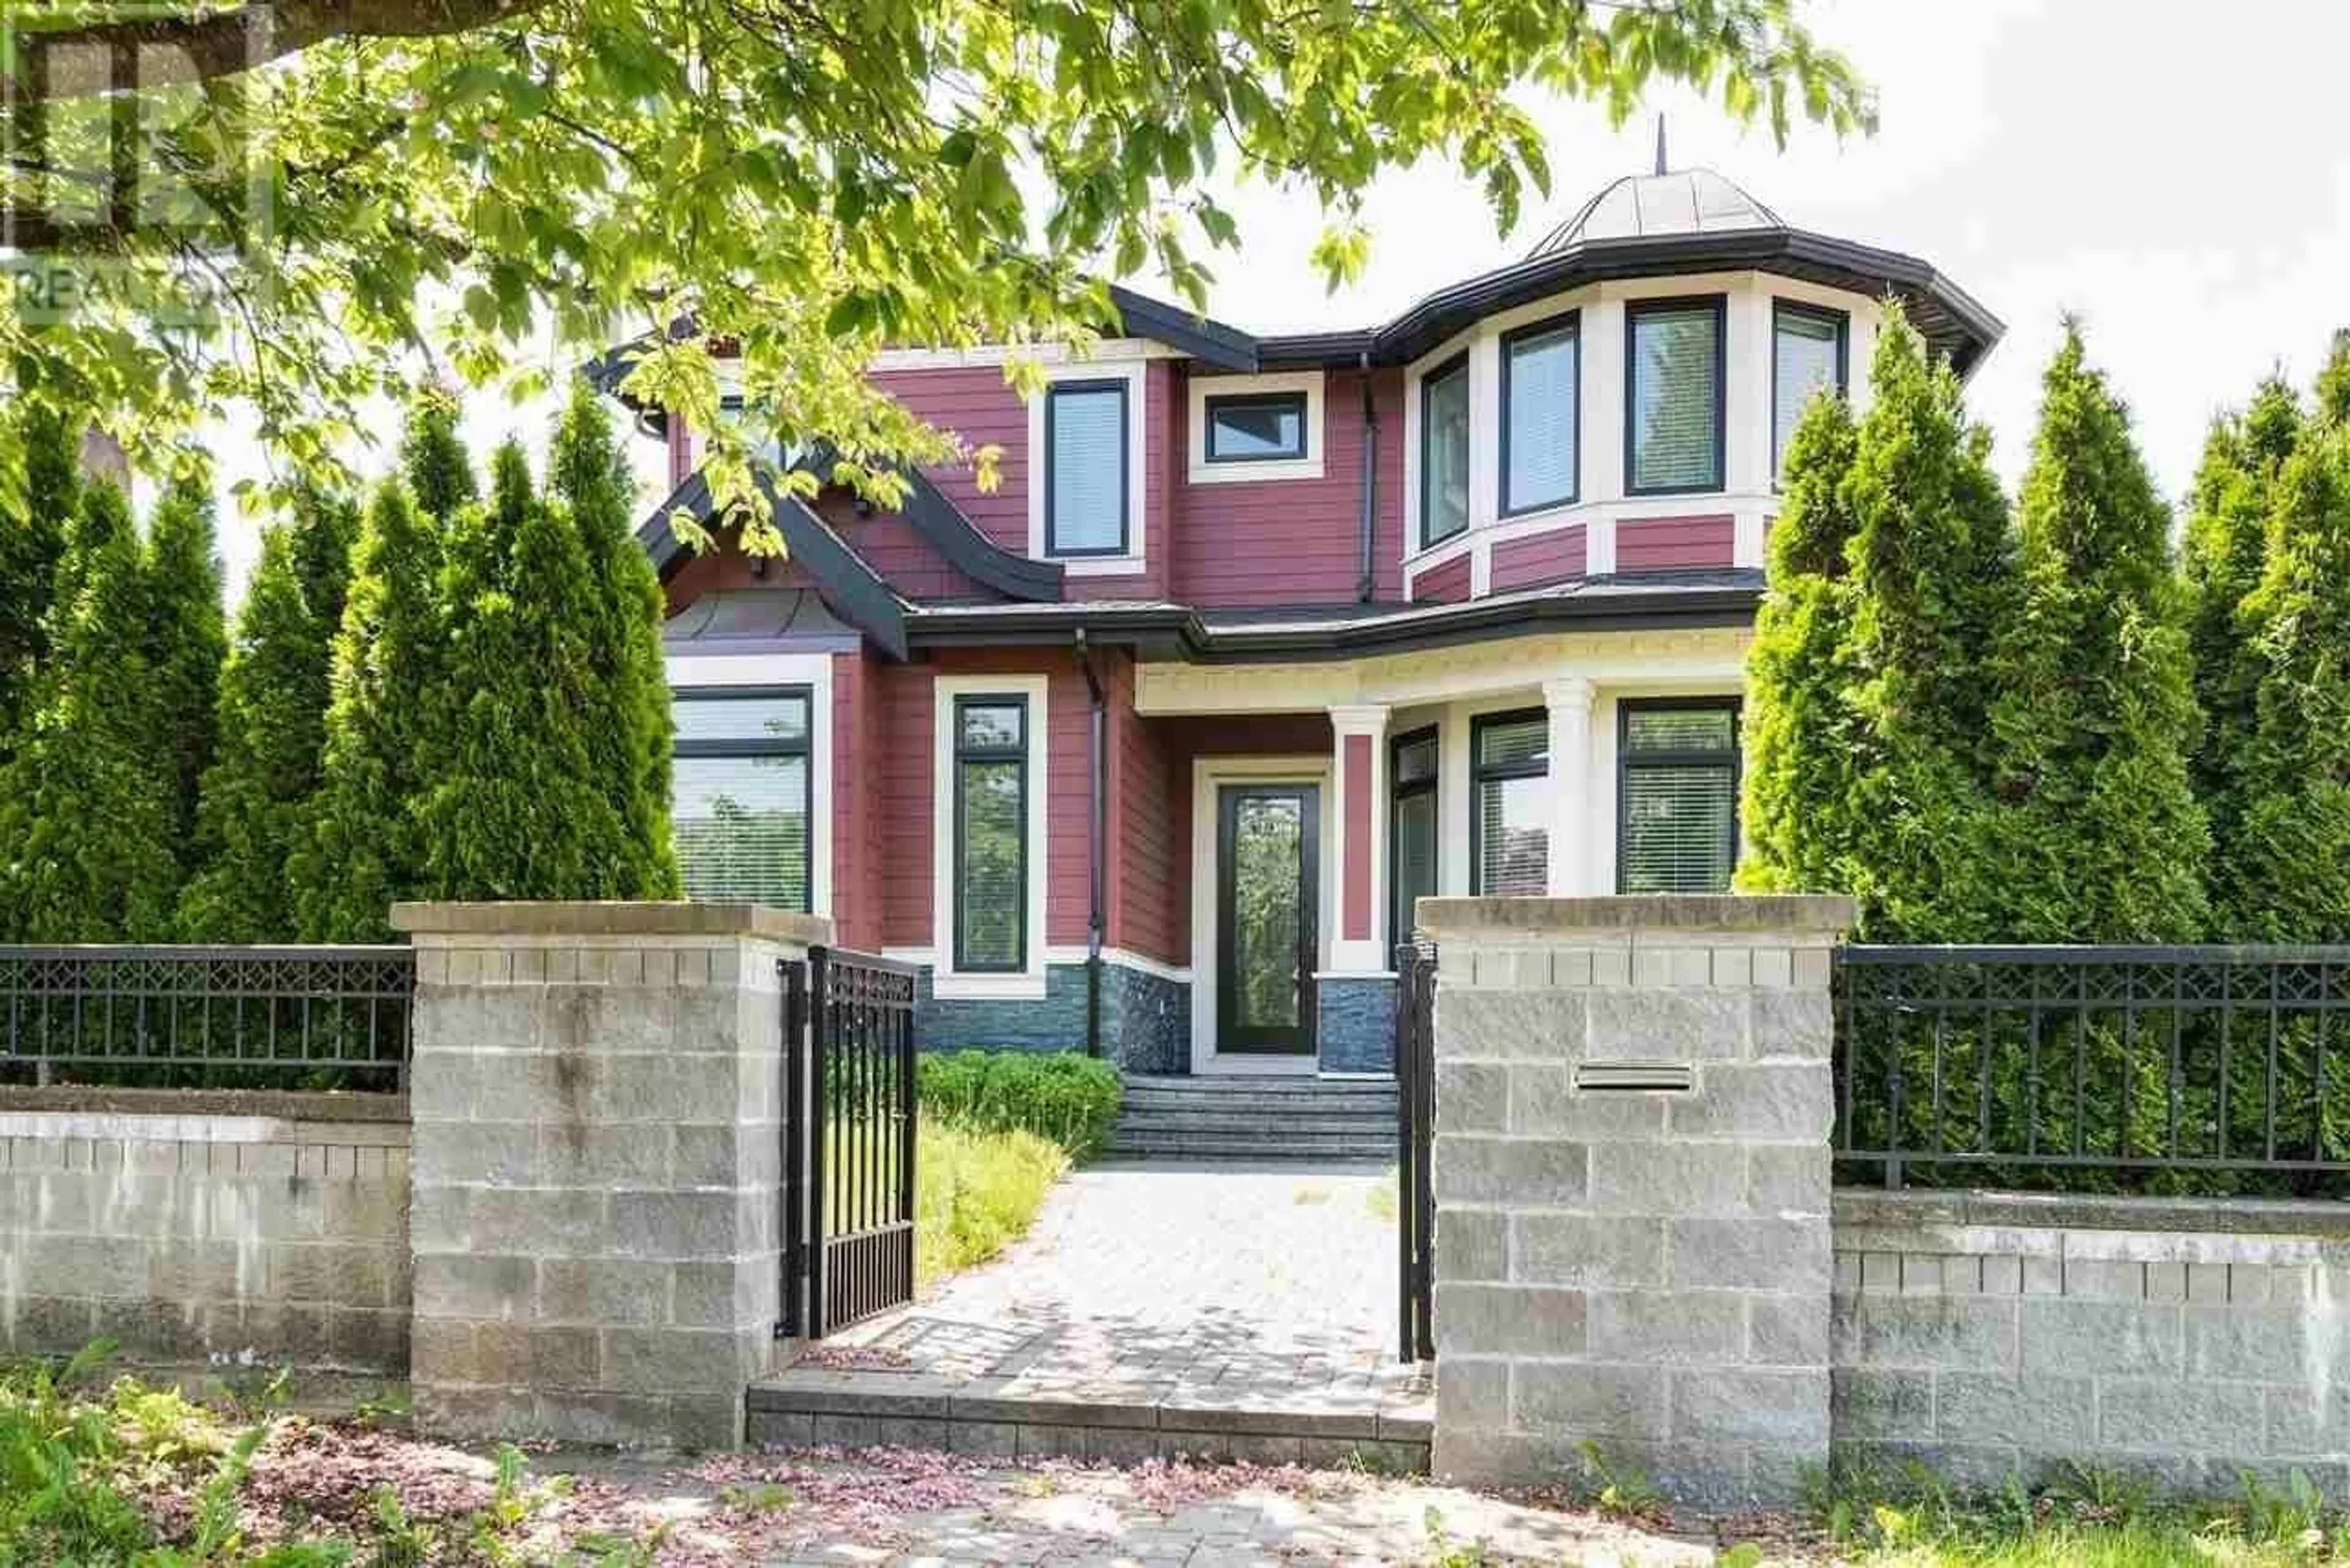 Home with brick exterior material for 6509 LEIBLY AVENUE, Burnaby British Columbia V5E3E2